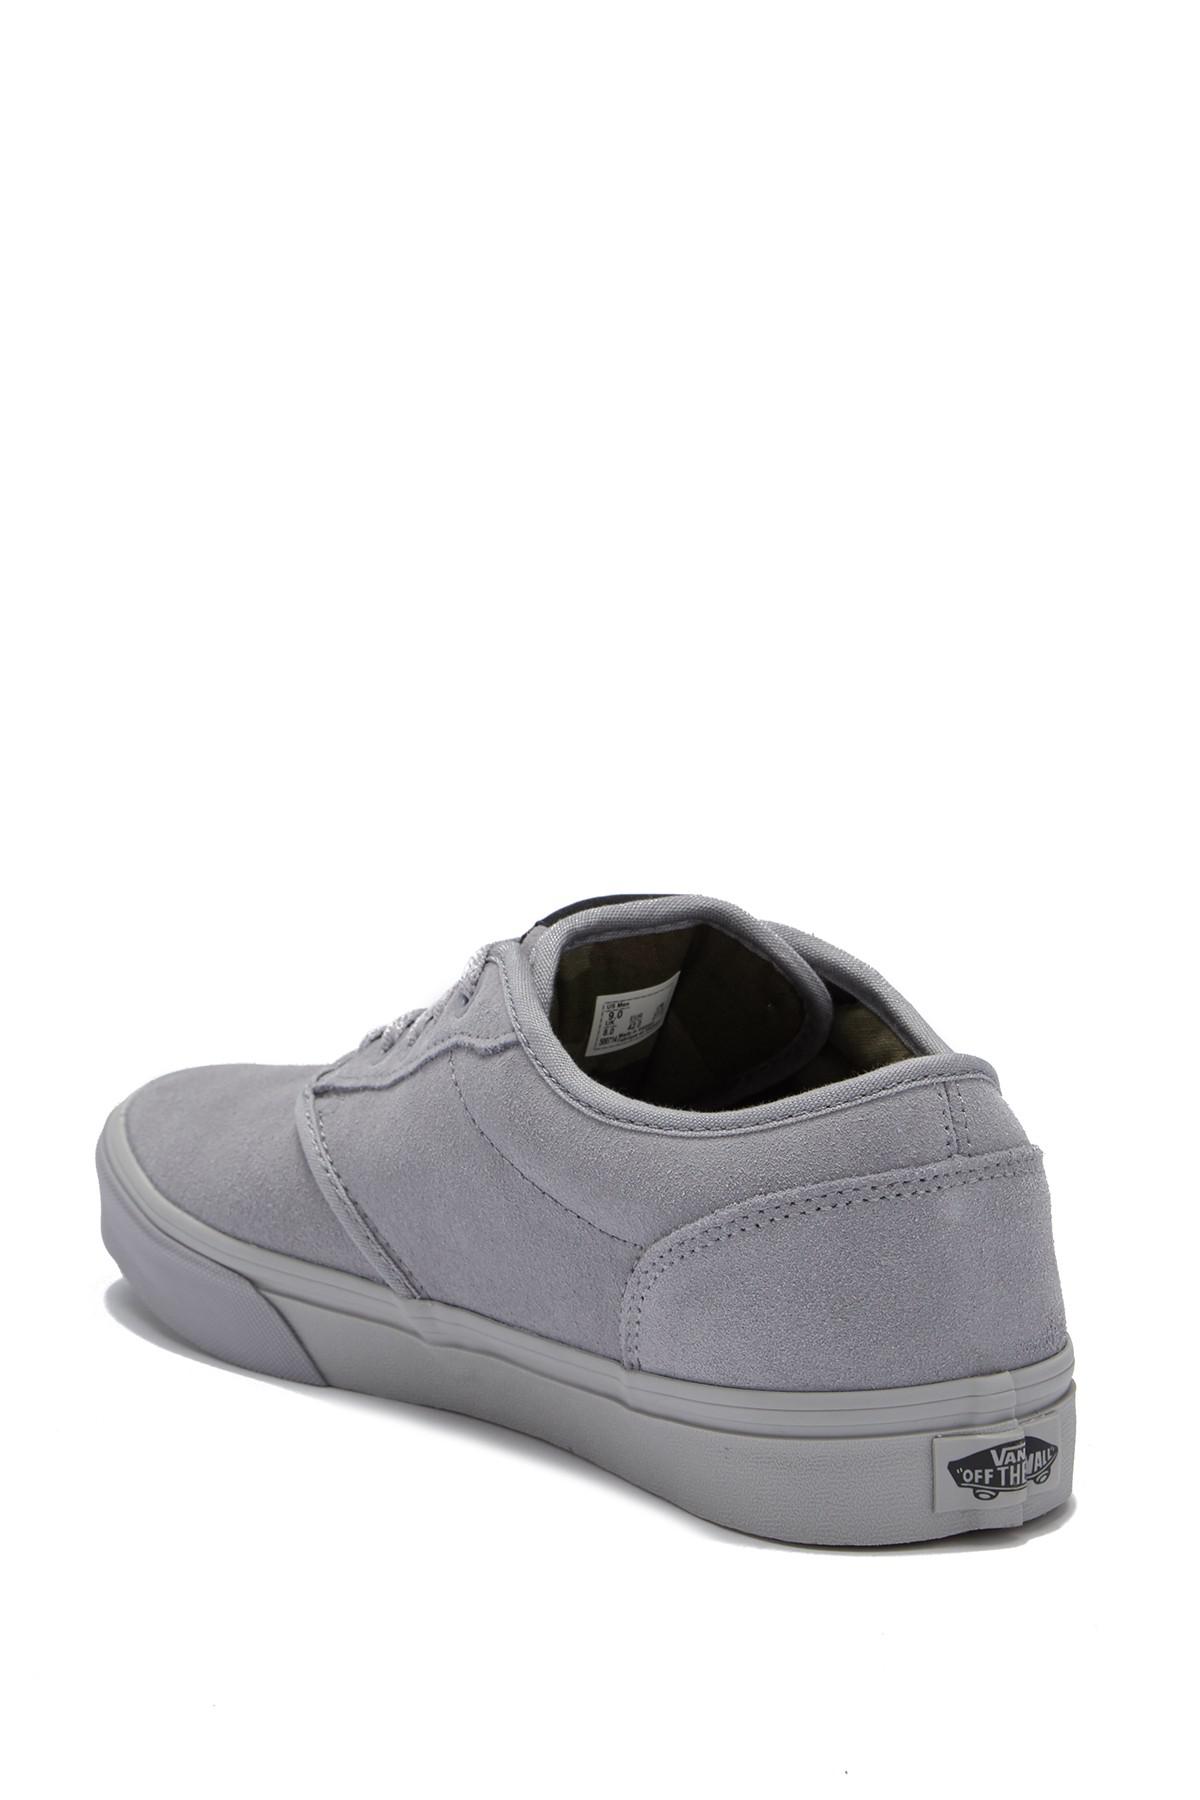 Vans Atwood Sneaker in Gray for Men | Lyst